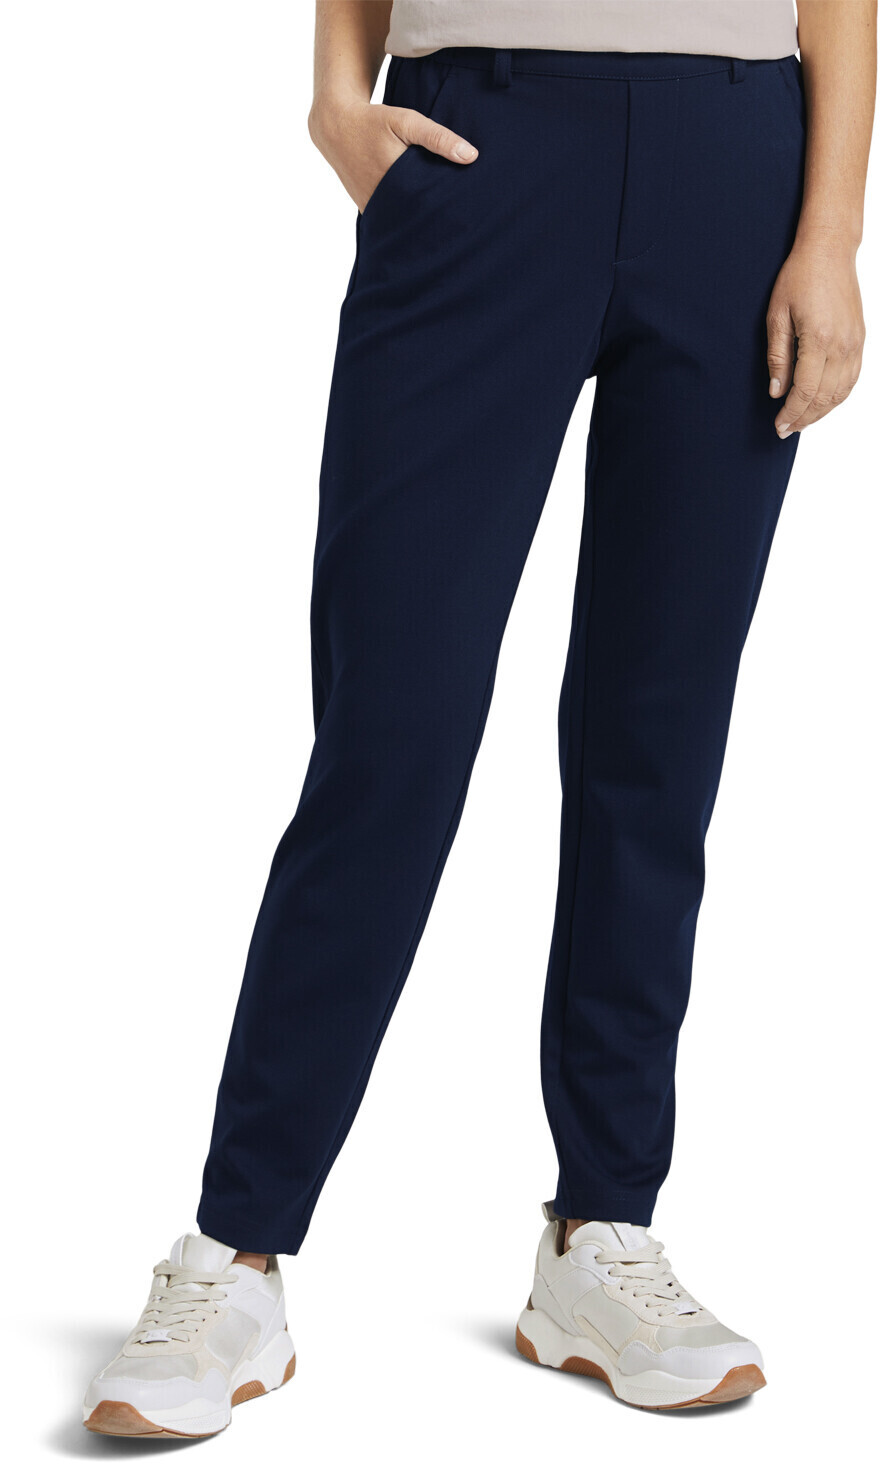 Tom Tailor Denim Damen-jeans (1021175) sky captain blue ab 27,99 € |  Preisvergleich bei